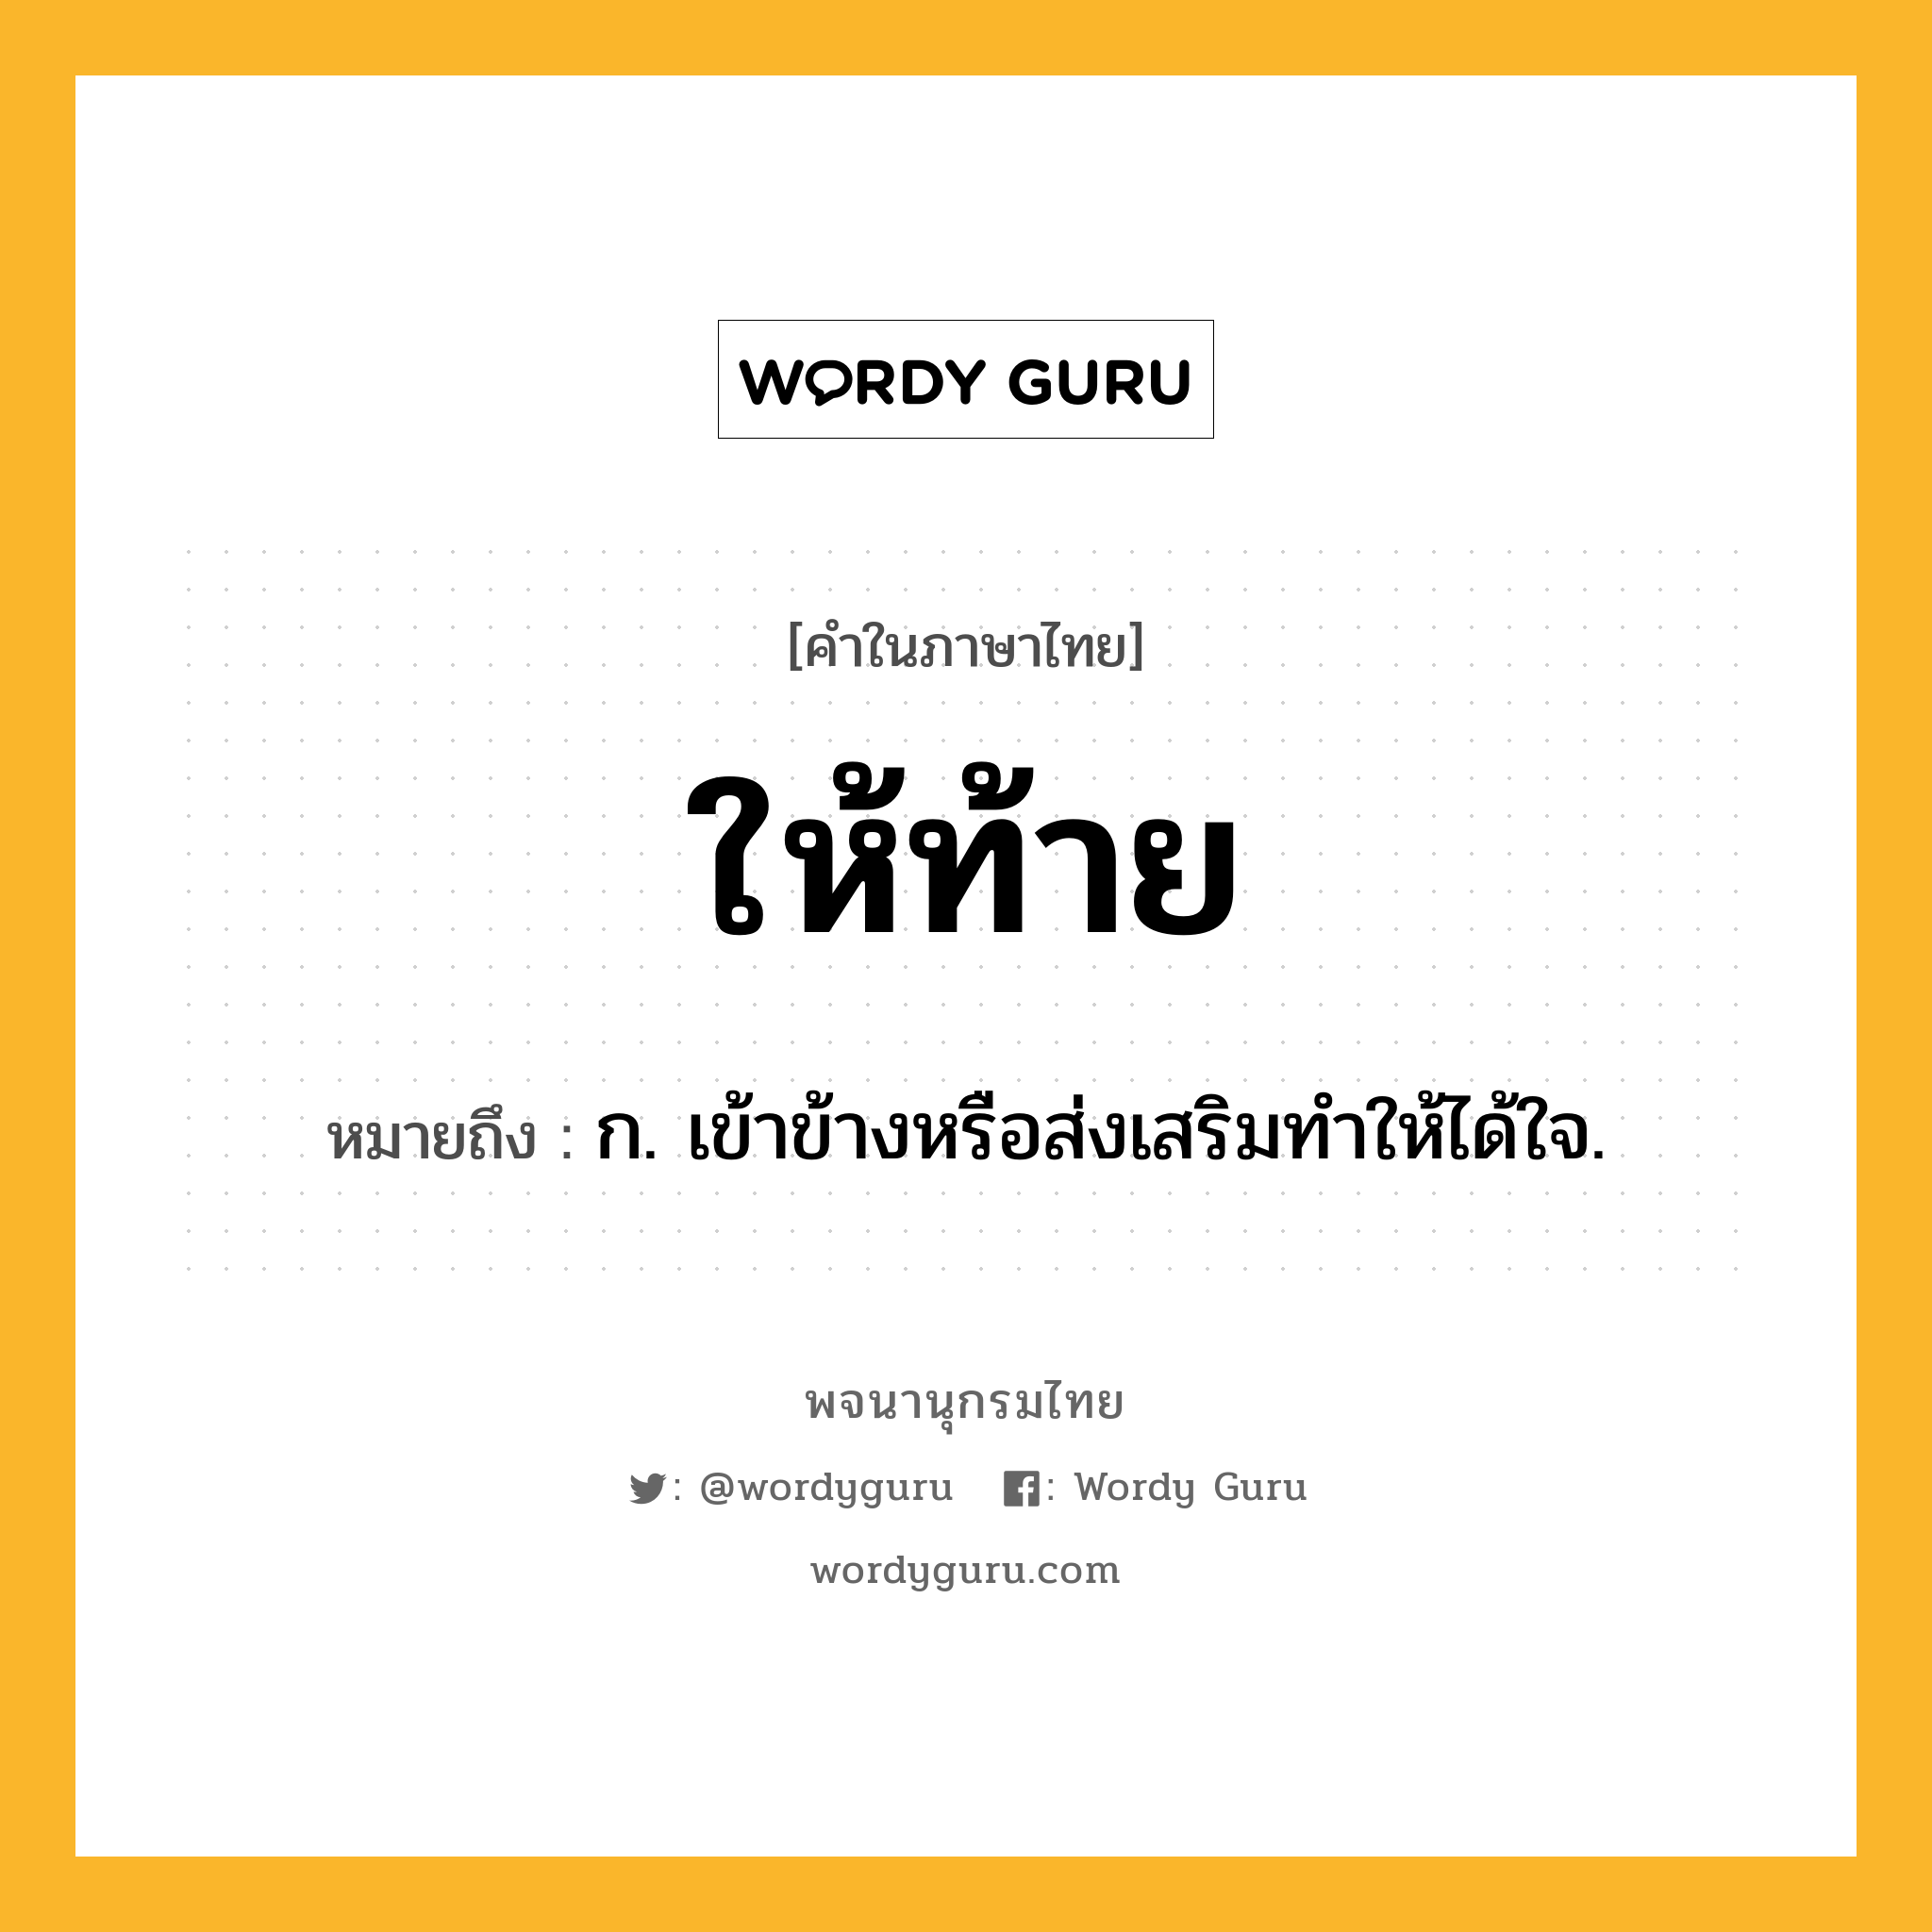 ให้ท้าย ความหมาย หมายถึงอะไร?, คำในภาษาไทย ให้ท้าย หมายถึง ก. เข้าข้างหรือส่งเสริมทำให้ได้ใจ.